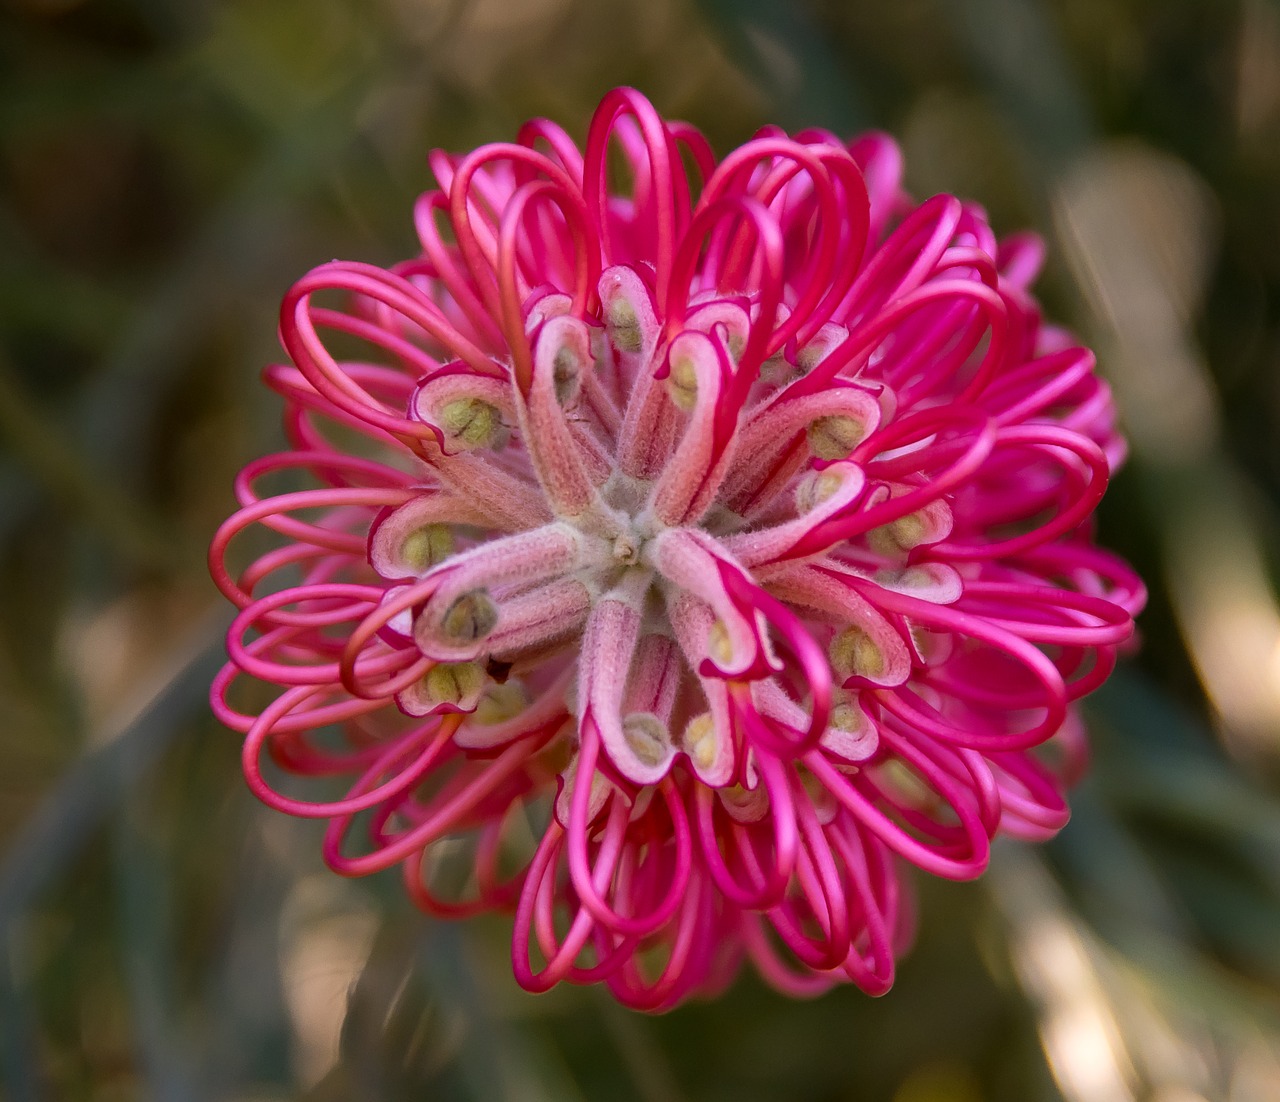 grevillea  flower  australian free photo